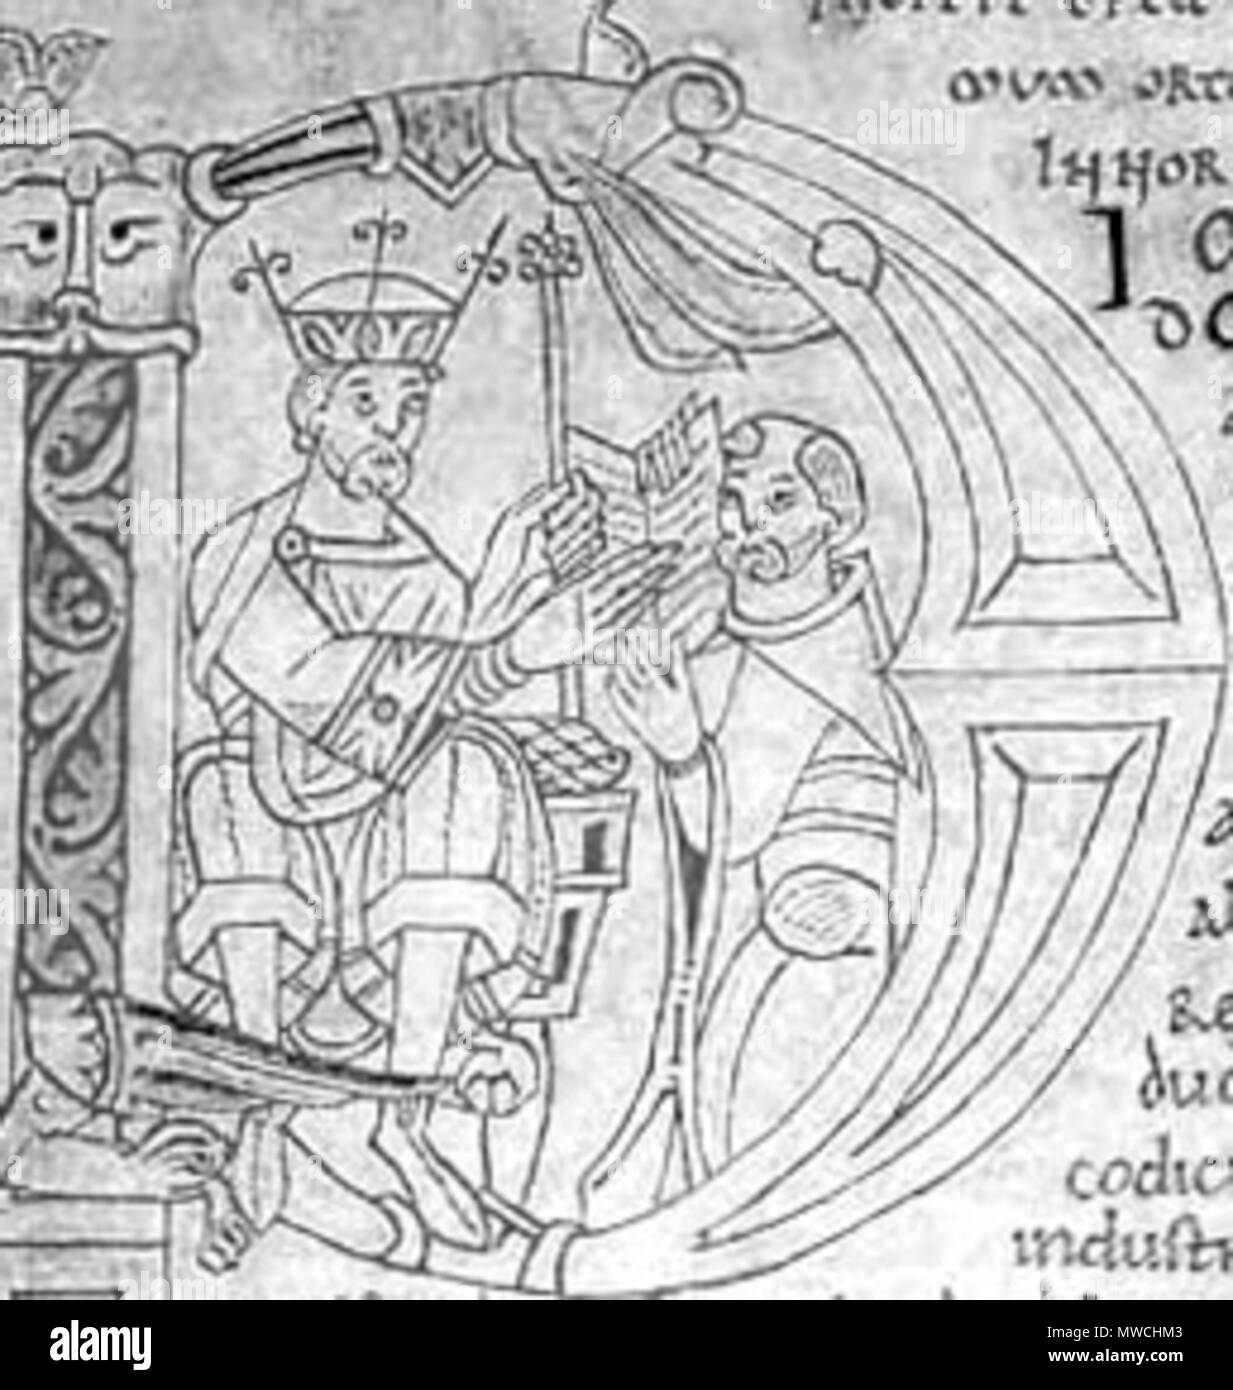 . Lettre majuscule d'un manuscrit présentant Guillaume de Jumièges Gesta Normannorum ducum offrant sa à Guillaume le Conquérant. 1070 s. Unbekannt 257 GuillaumedeJumieges Stockfoto